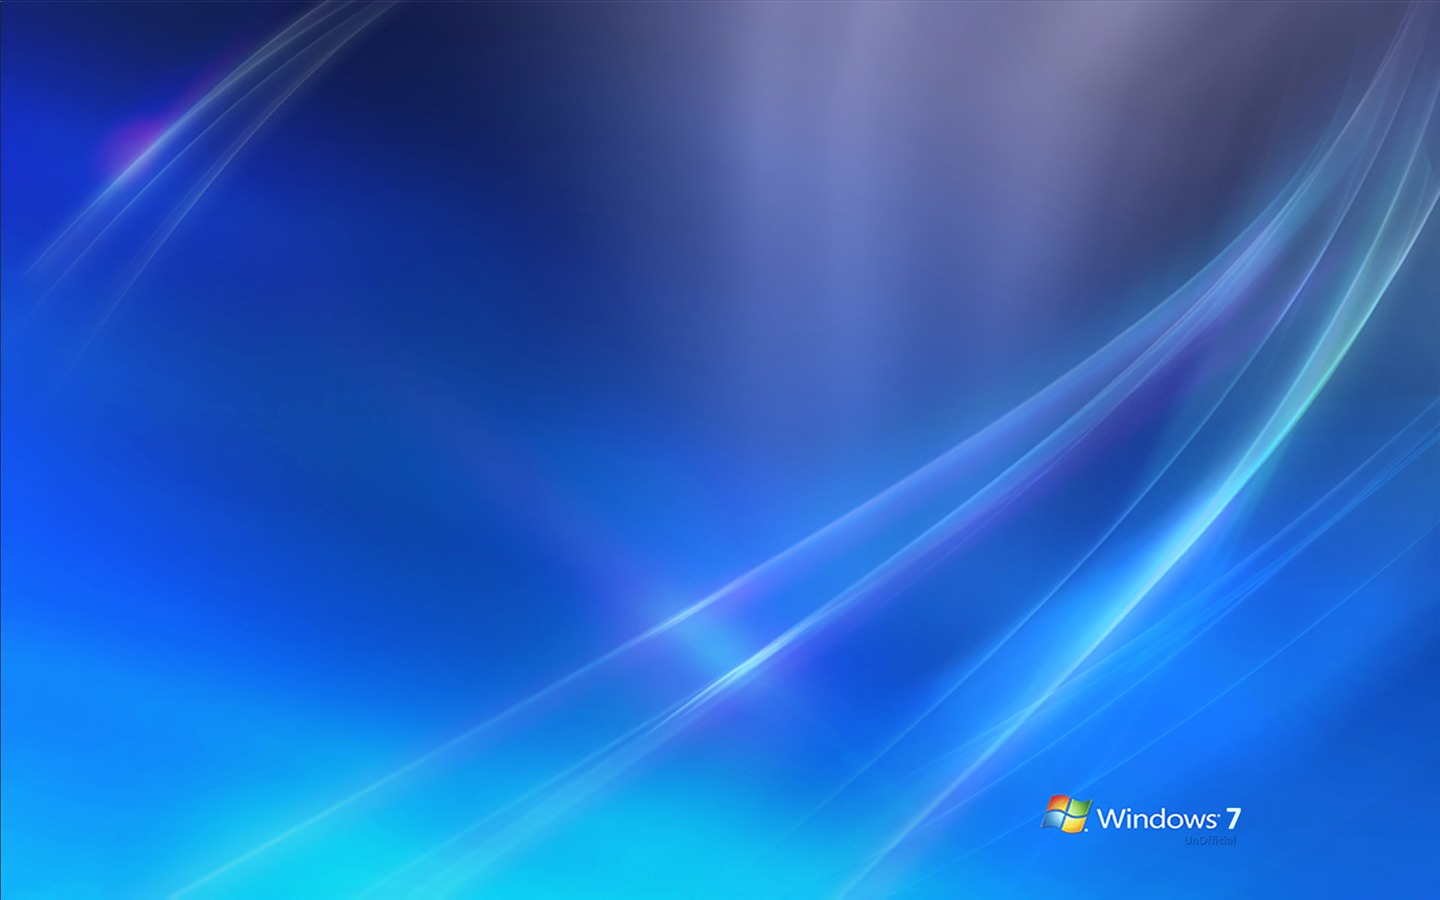 Windows7 theme wallpaper (2) #13 - 1440x900